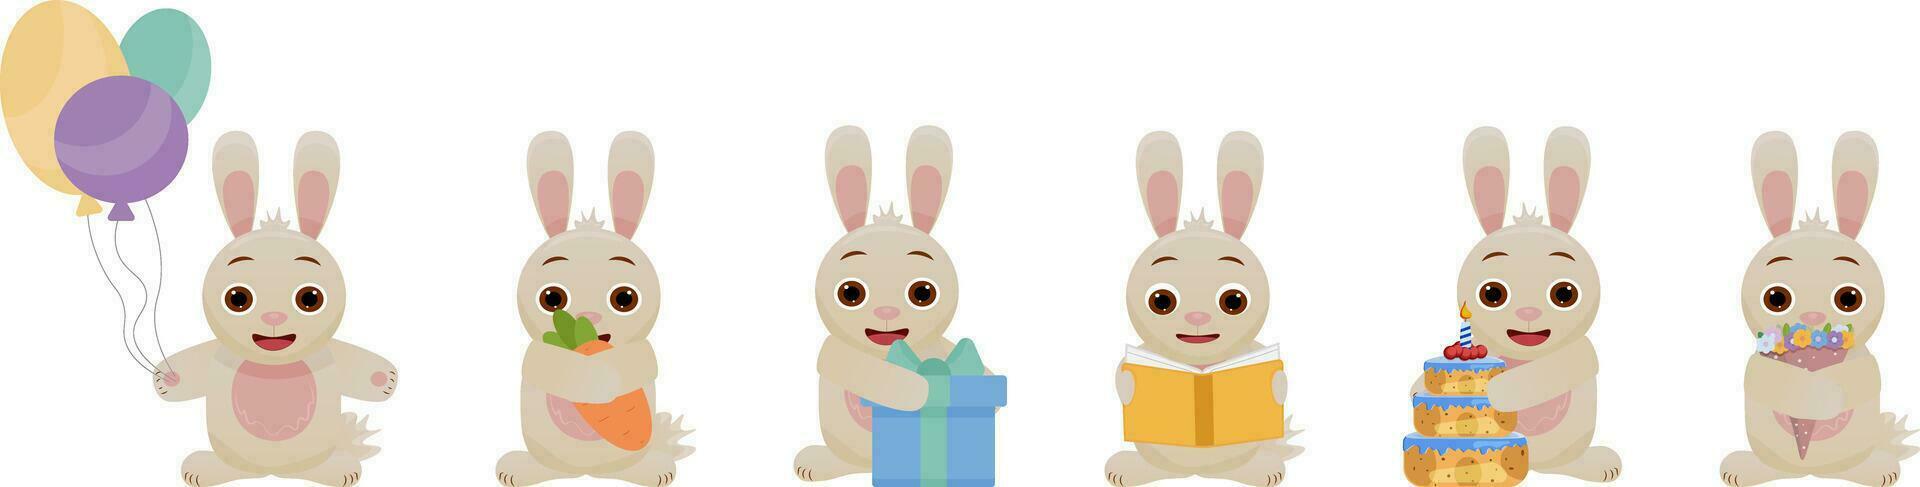 einstellen von Vektor Abbildungen von süß Hasen, Kaninchen .A Hase mit ein Geschenk, ein Ballon, ein Hase mit ein Kuchen, ein Hase mit ein Buch, ein Hase mit Blumen. feiern das Urlaub.